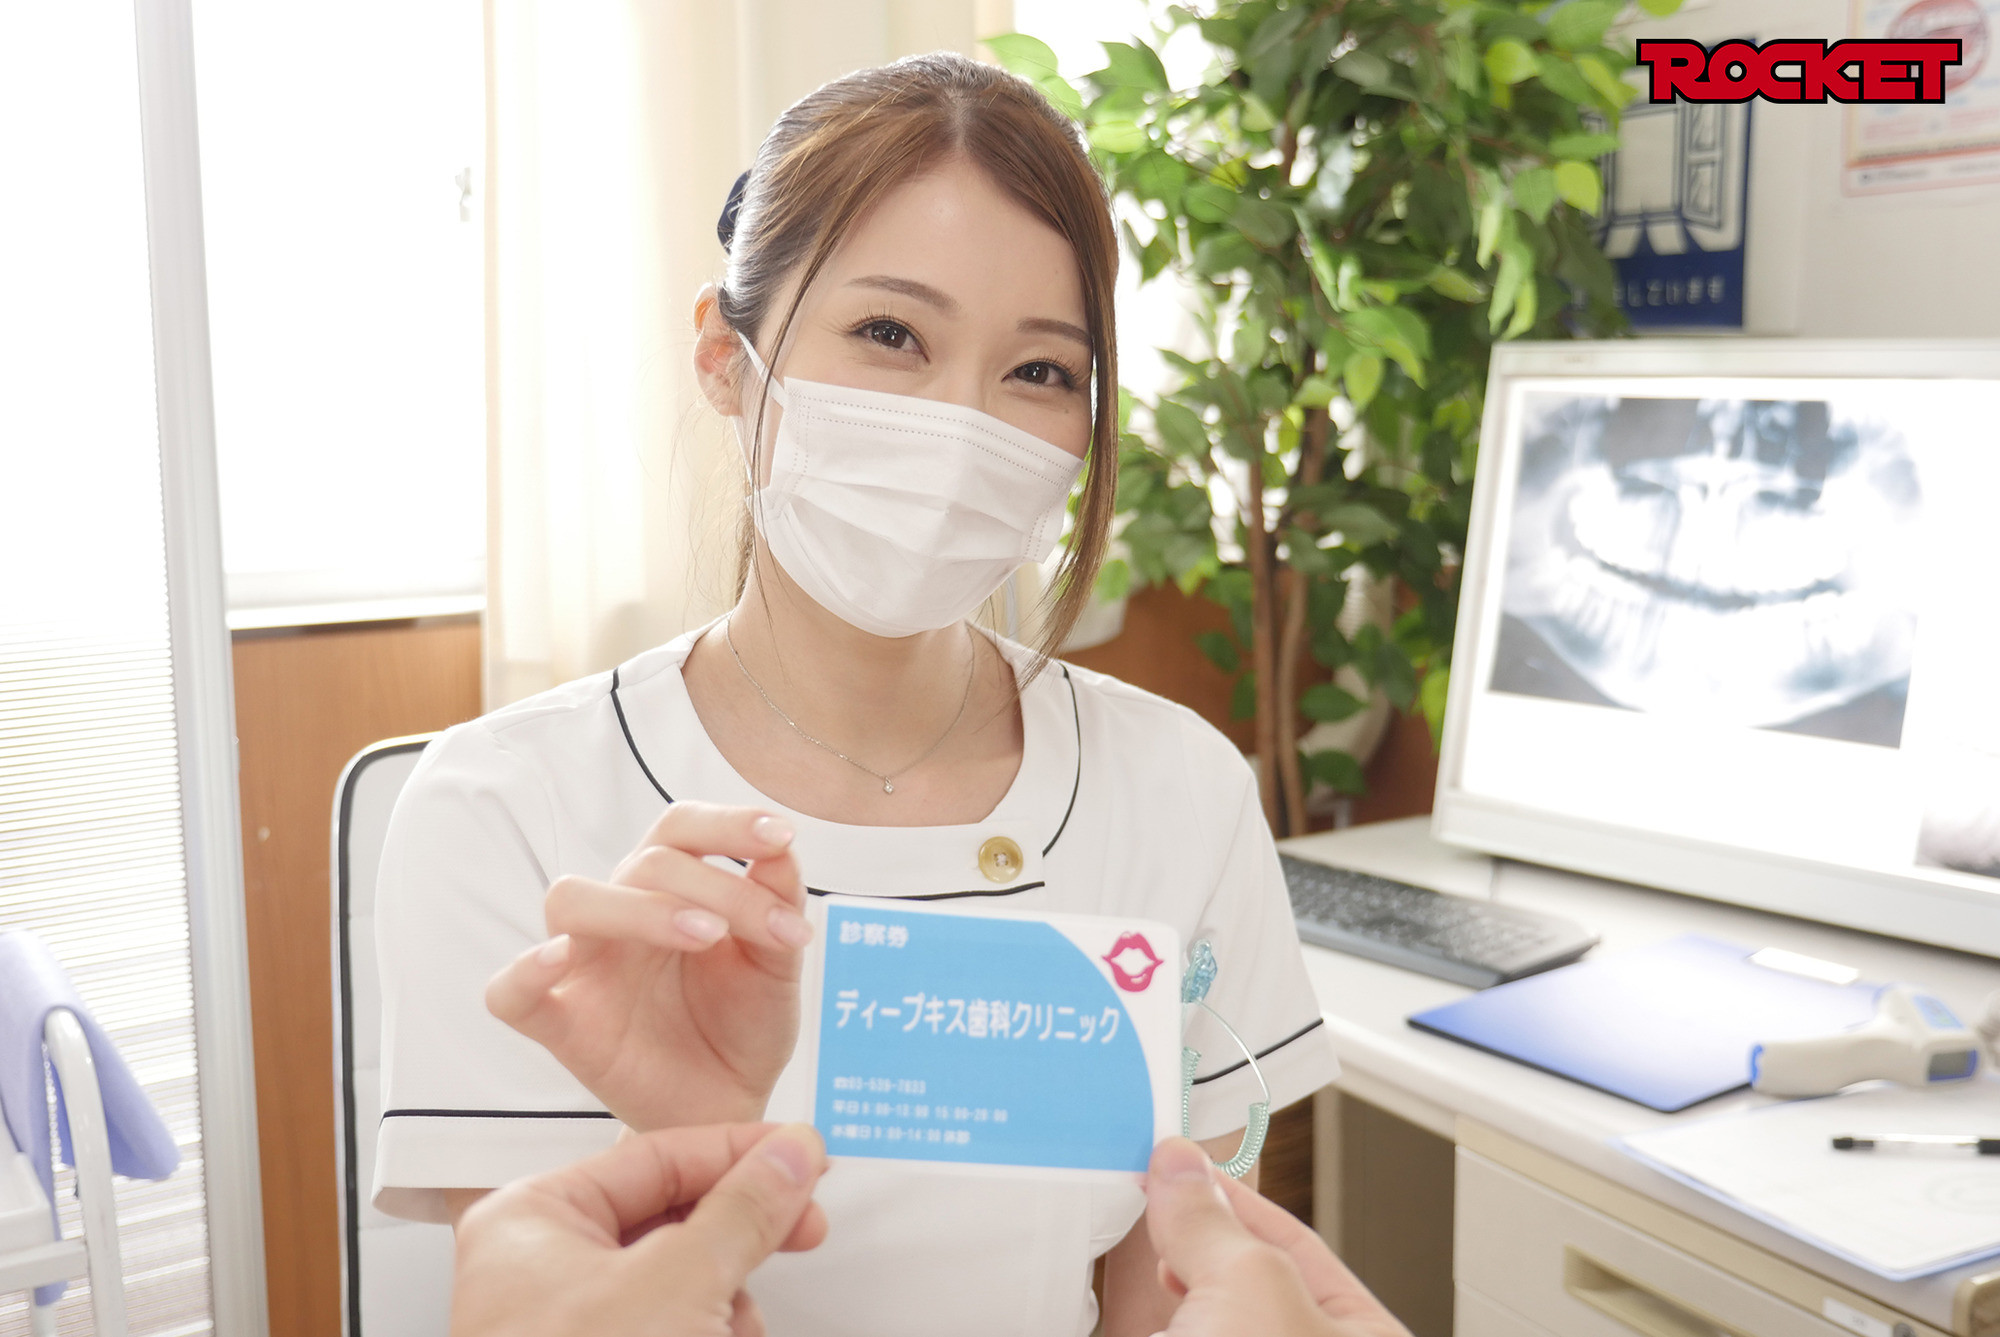 ★【キス】ディープキス歯科クリニック 5 佐伯由美香先生のアナコンダキスSP